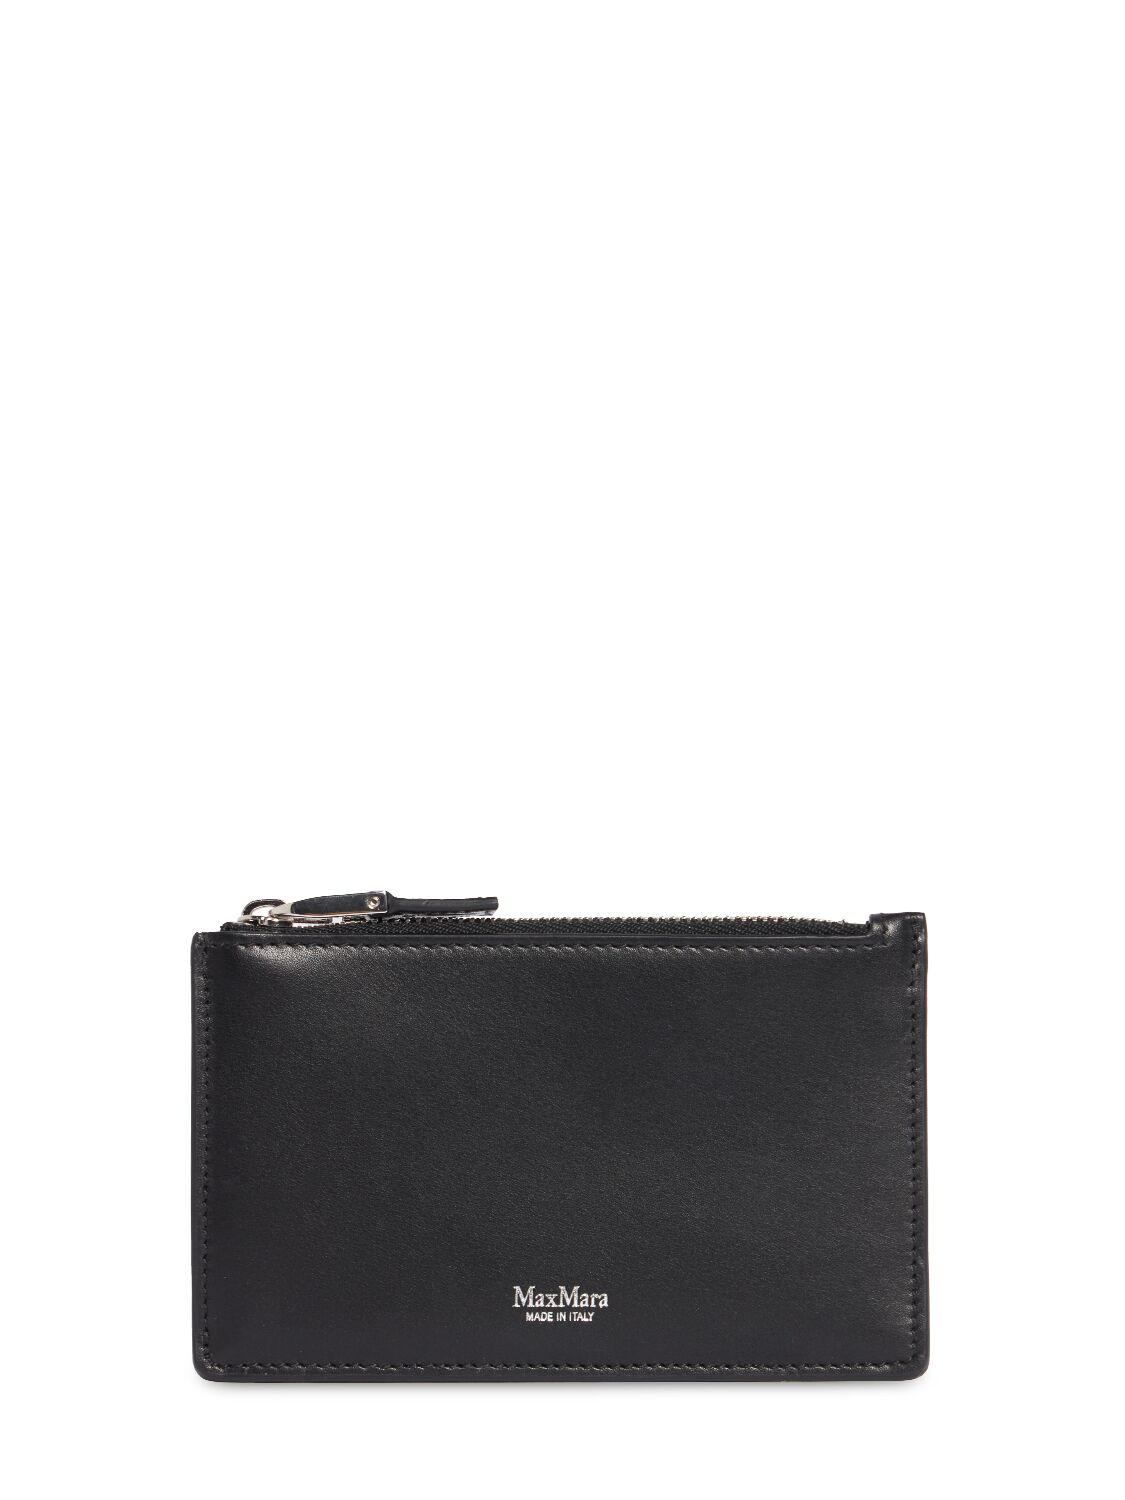 Max Mara Leather Cardholder In Black